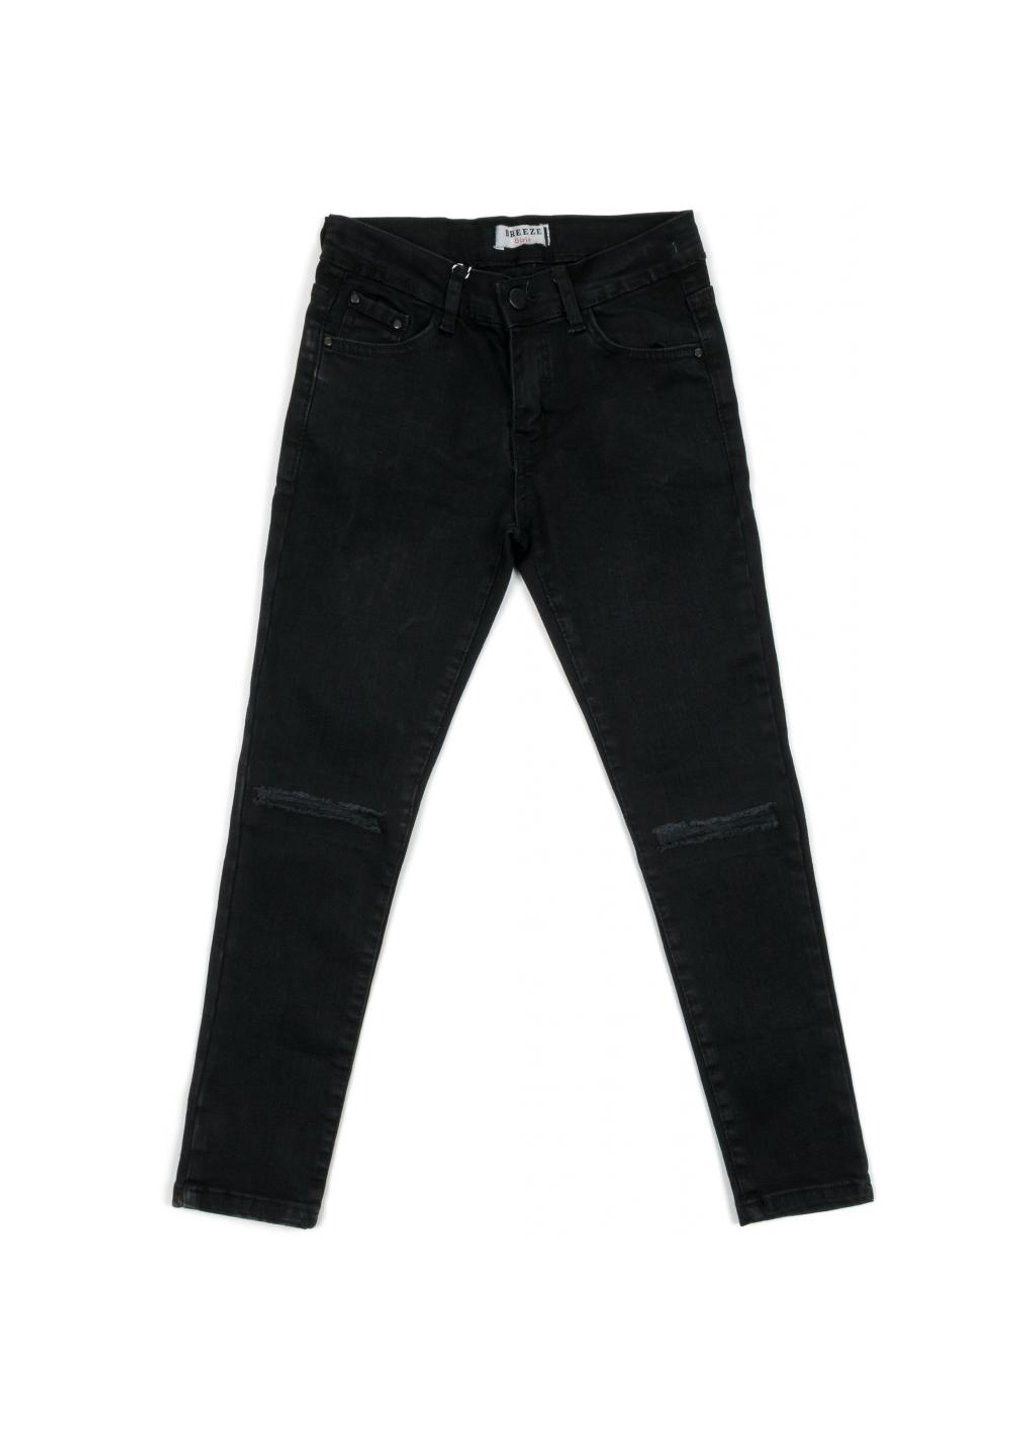 Черные демисезонные джинсы с дырками (20214-140g-black) Breeze